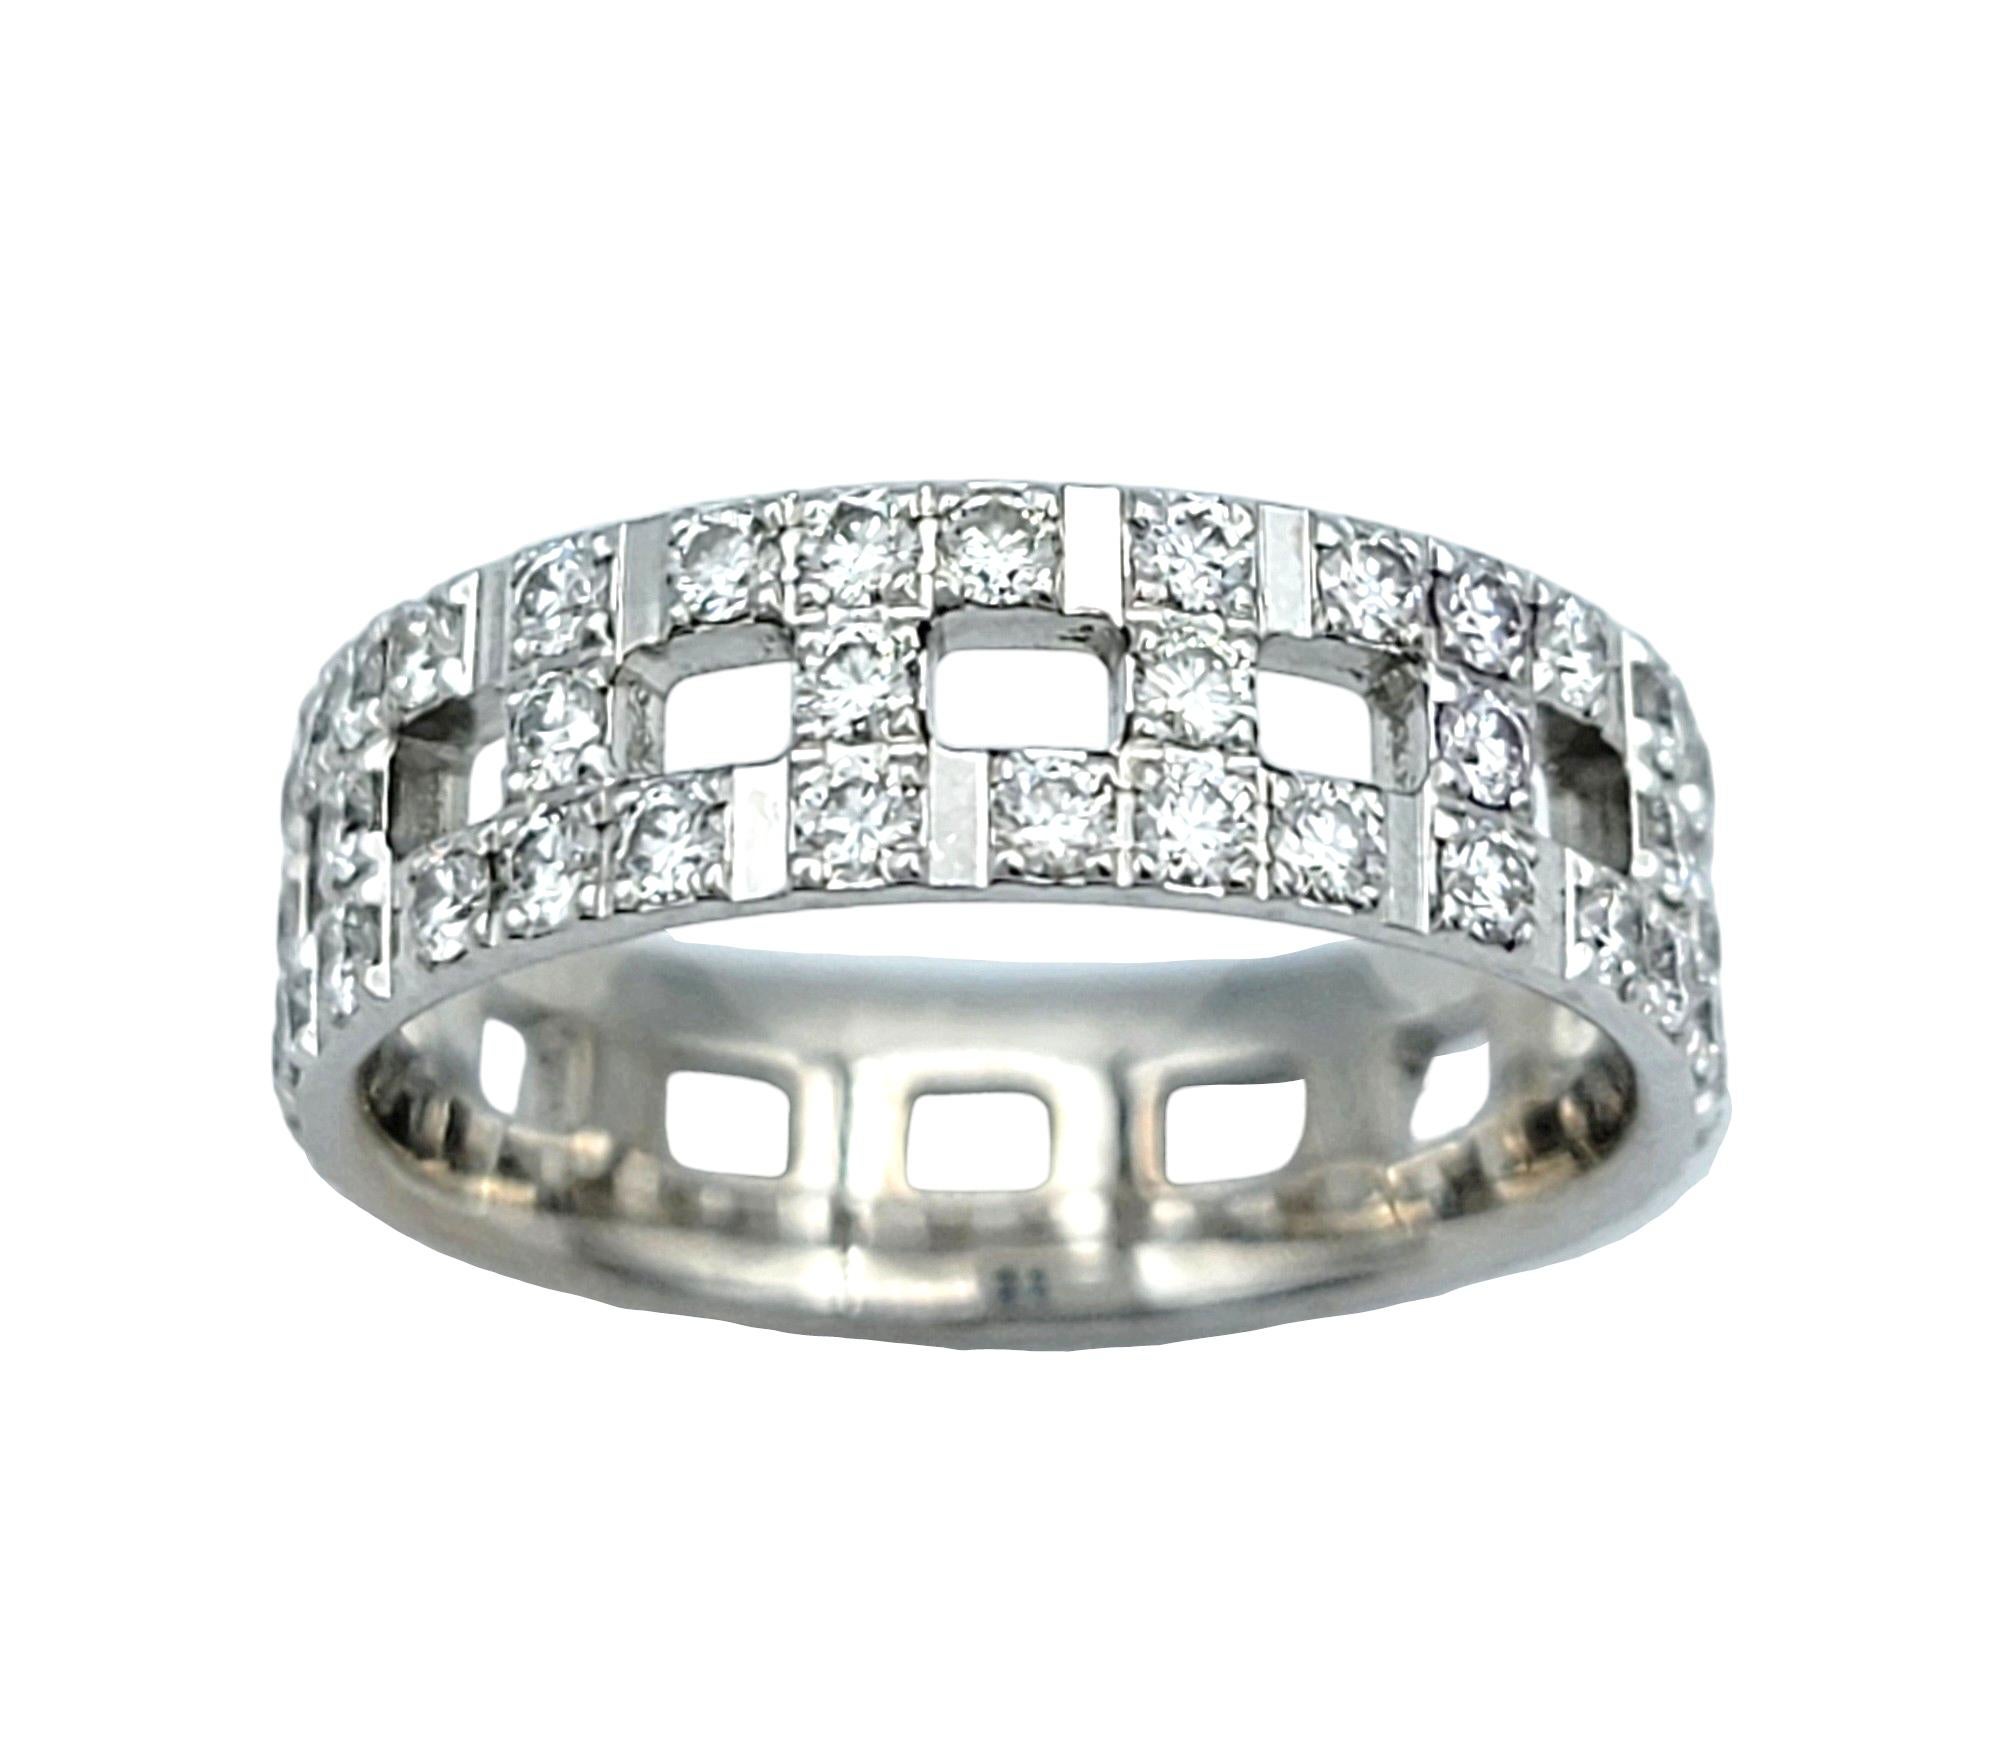 Ringgröße: 5.75

Dieser schillernde Tiffany T Trueing Diamantring ist ein echter Hingucker am Finger.  Tiffany & Co. wurde 1837 in New York City gegründet und ist eines der traditionsreichsten Luxusdesignhäuser der Welt, das weltweit für sein